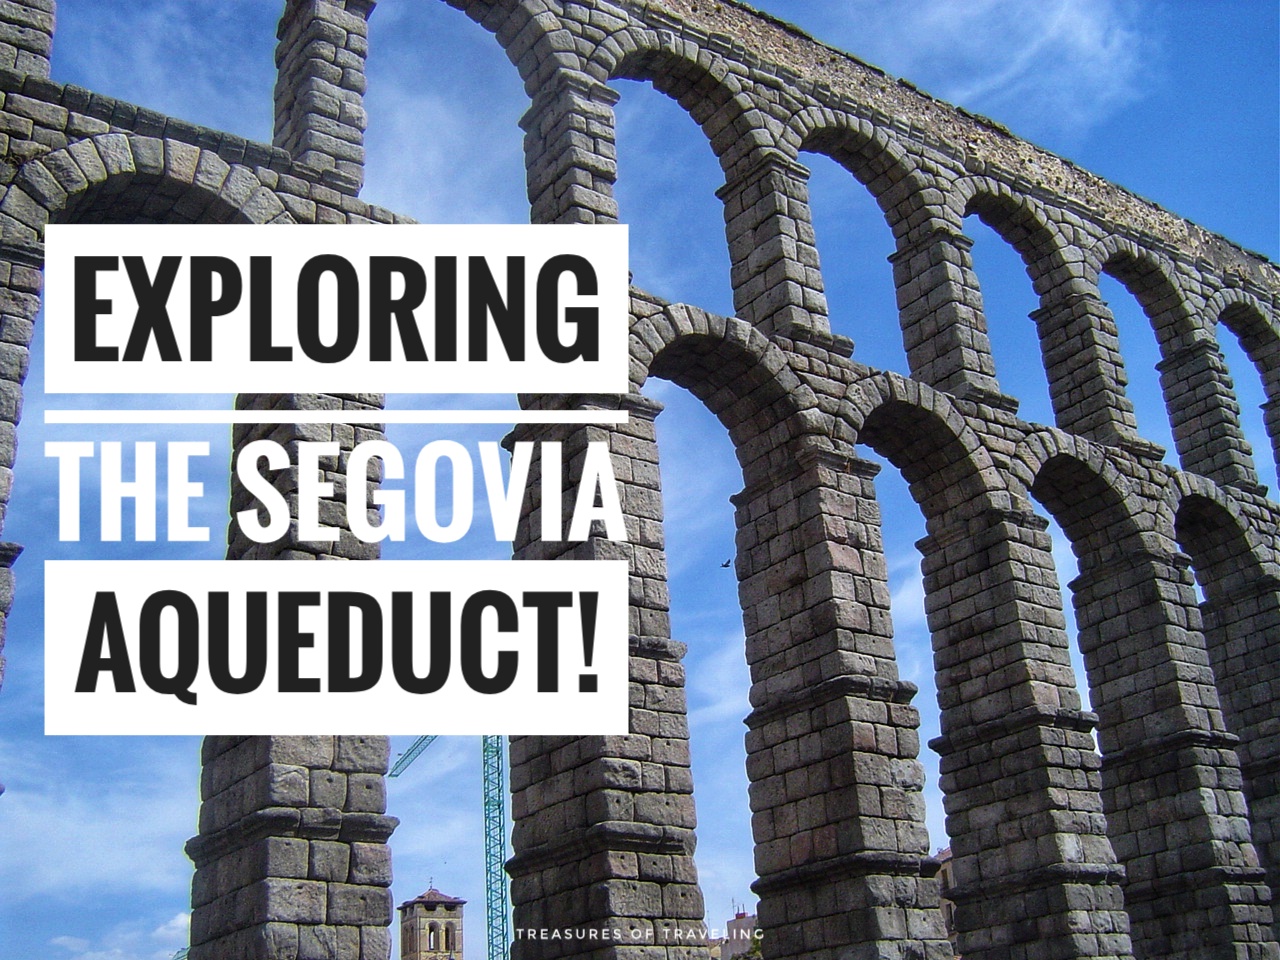 Exploring the Segovia Aqueduct!